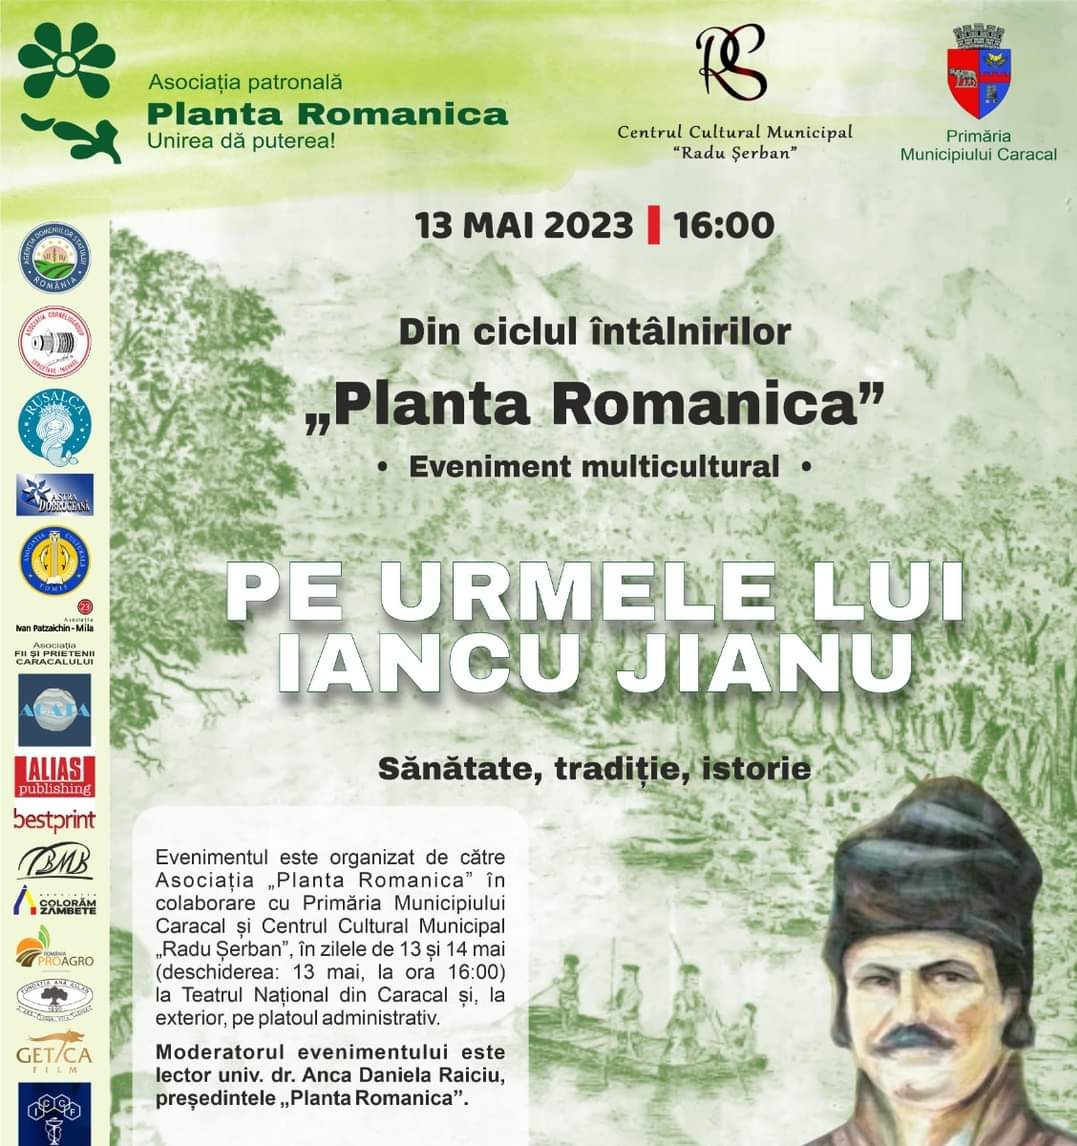 “Pe urmele lui Iancu Jianu”, eveniment multicultural la Teatrul Național din Caracal